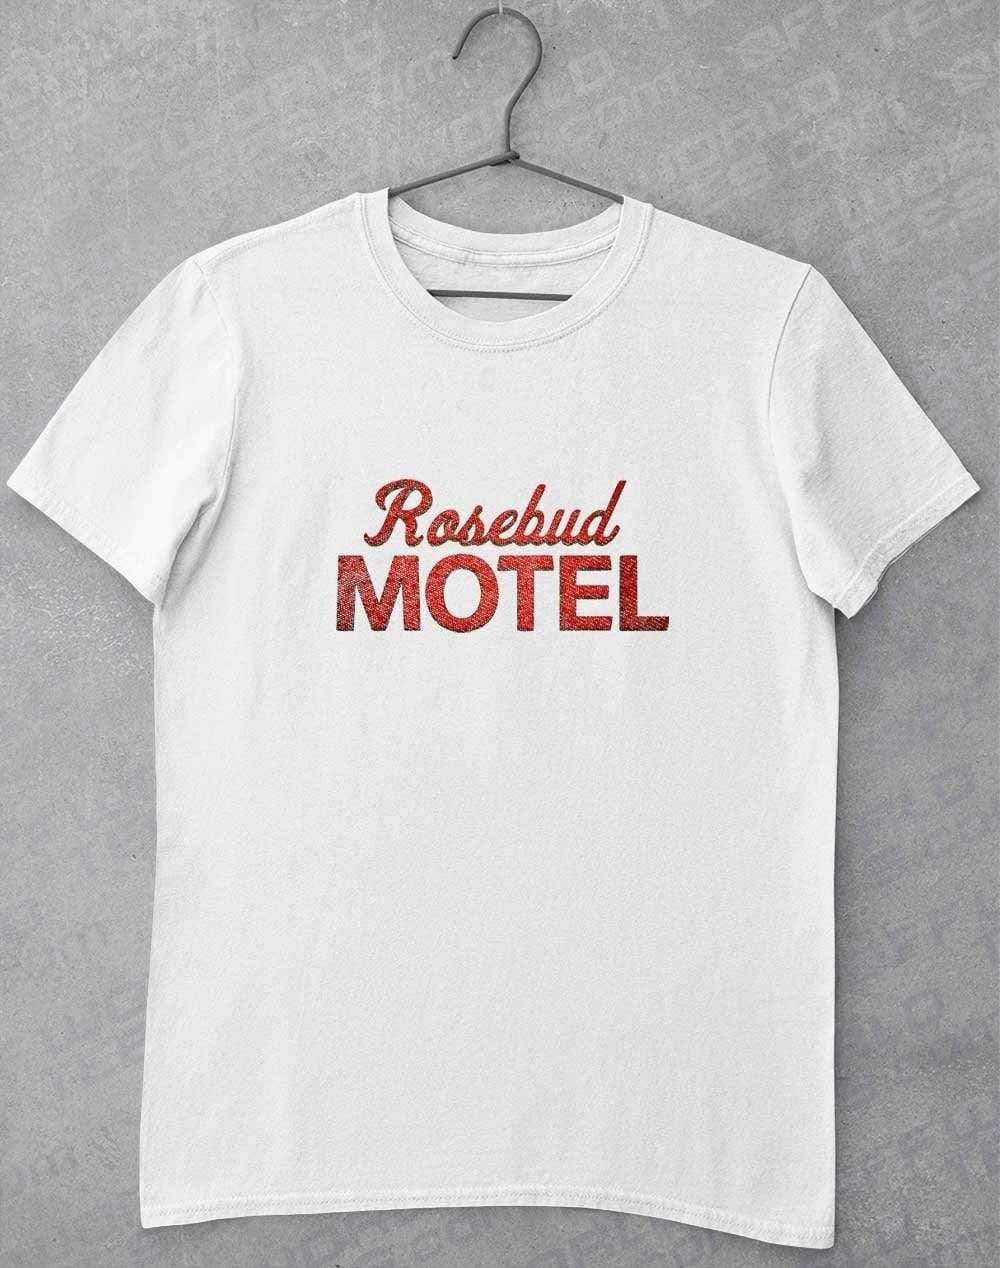 Rosebud Motel T-Shirt S / White  - Off World Tees